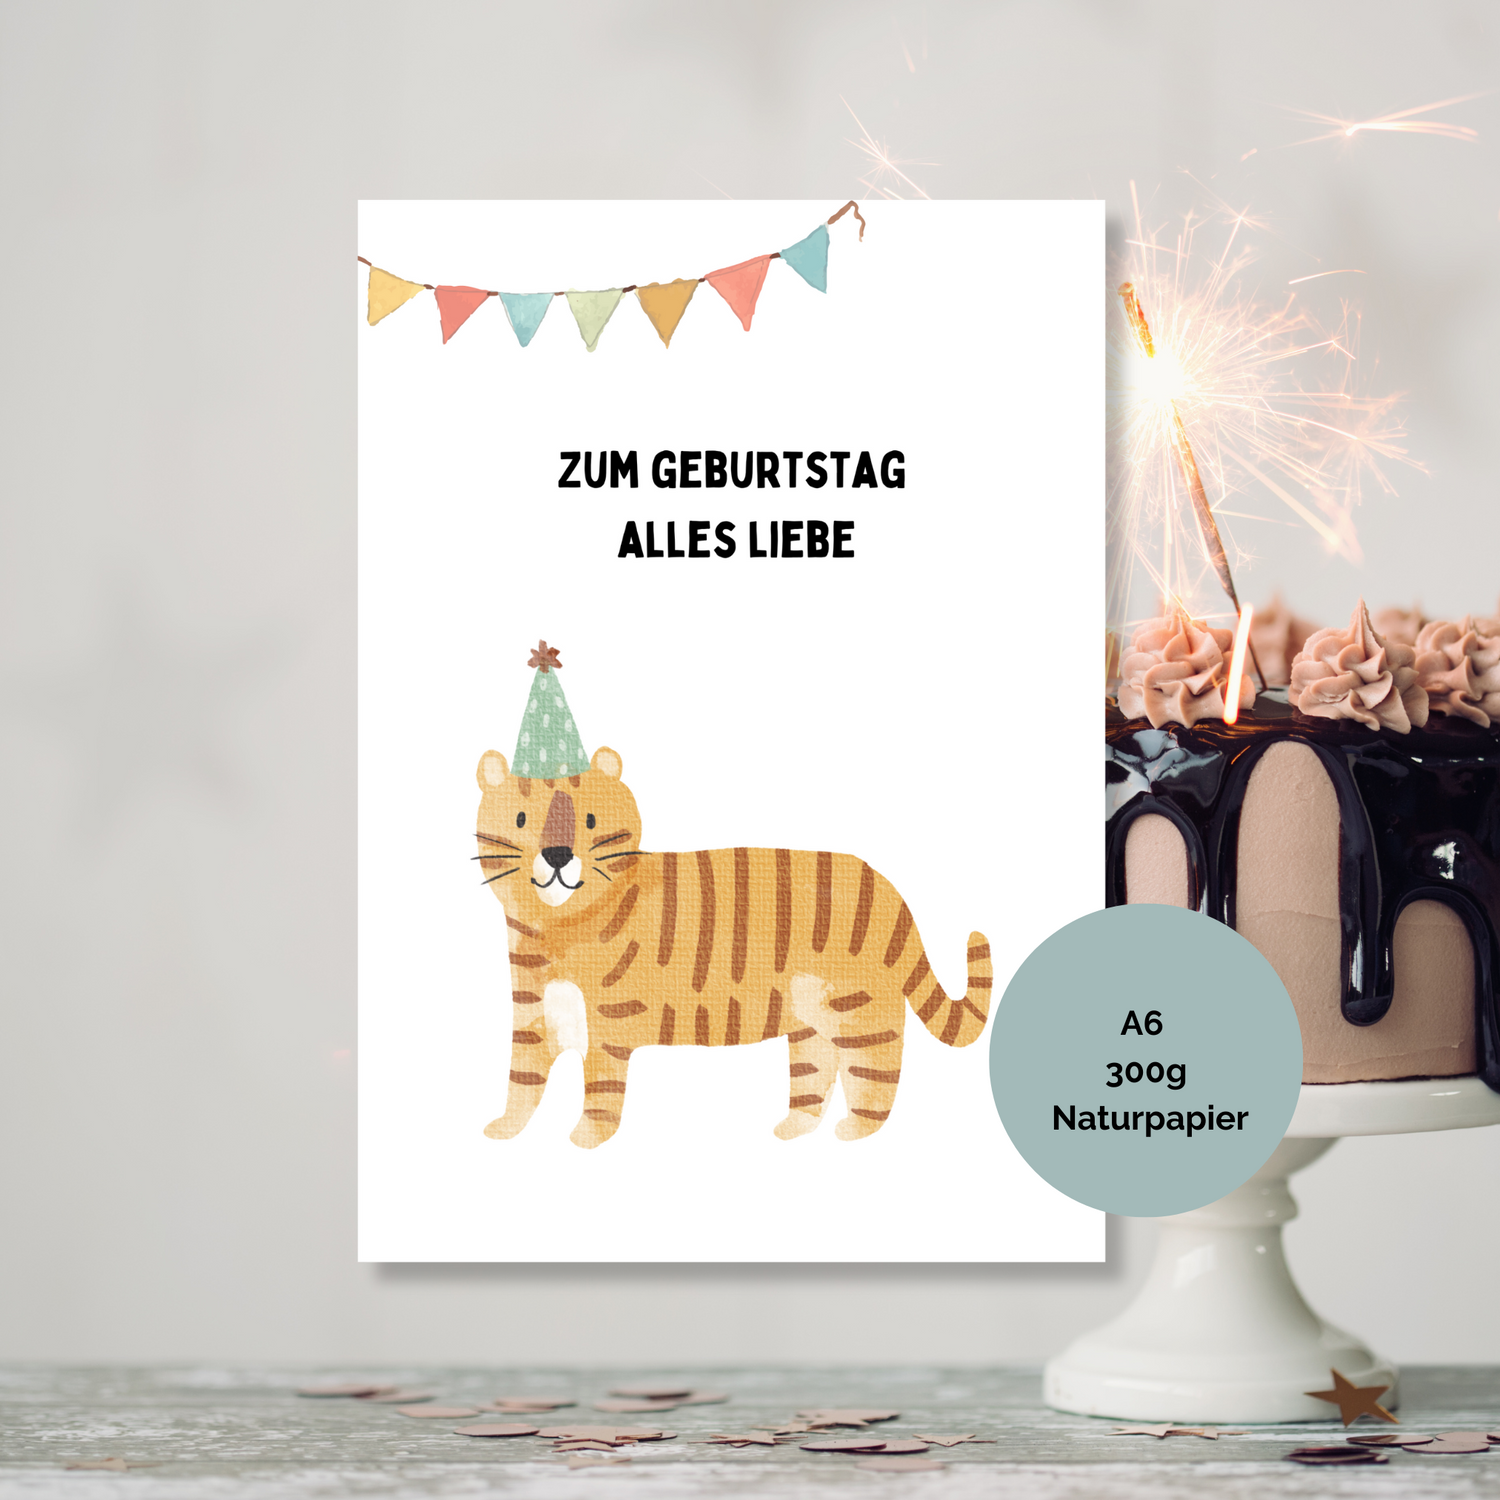 Geburtstagskarte mit süßem Tiger-Motiv in Aquarell-Optik - perfekt für kleine Tierliebhaber.